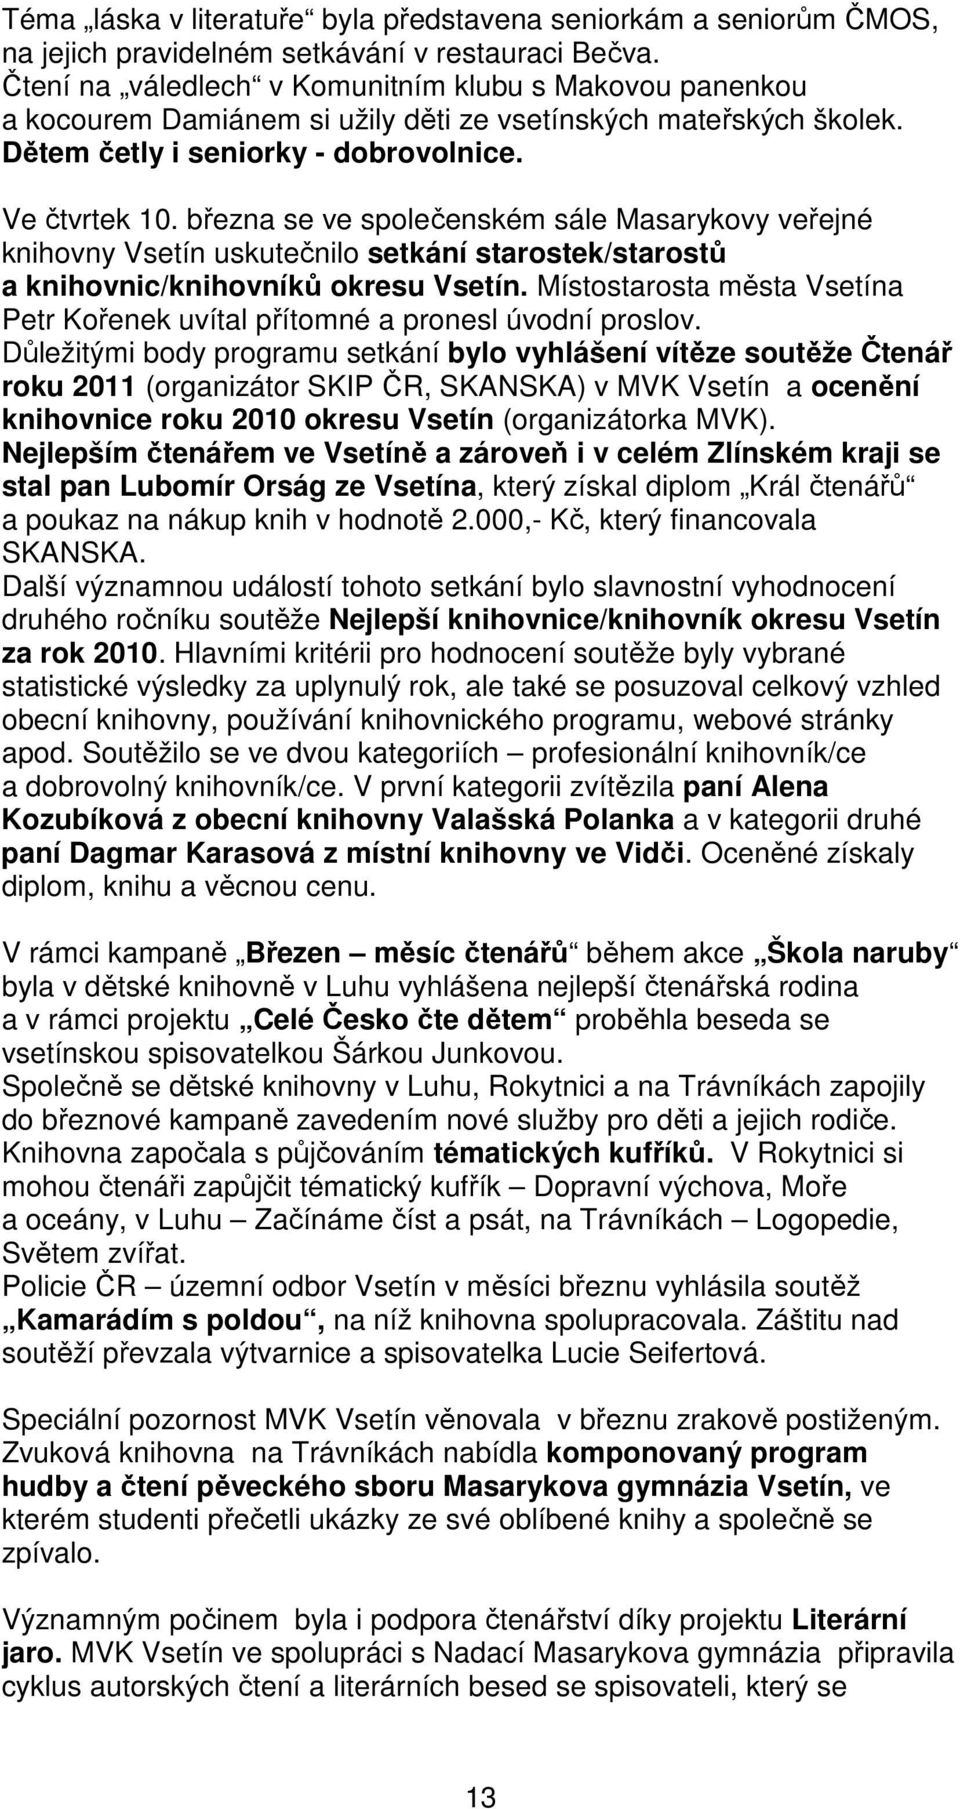 března se ve společenském sále Masarykovy veřejné knihovny Vsetín uskutečnilo setkání starostek/starostů a knihovnic/knihovníků okresu Vsetín.